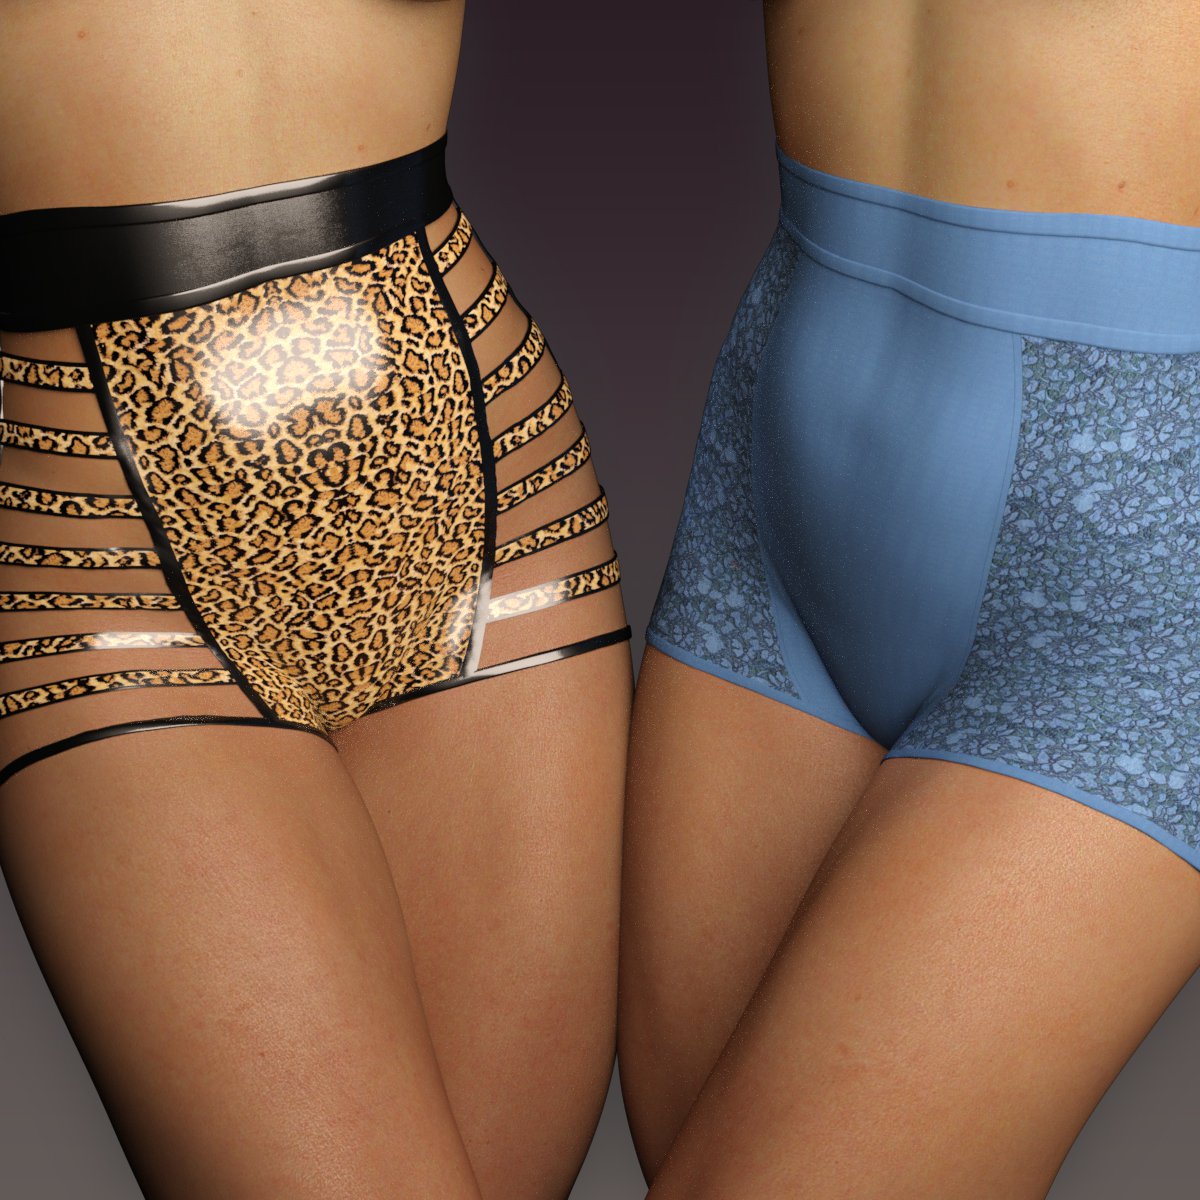 LUST – Pletaix Panties for G3 Female(s)_DAZ3D下载站